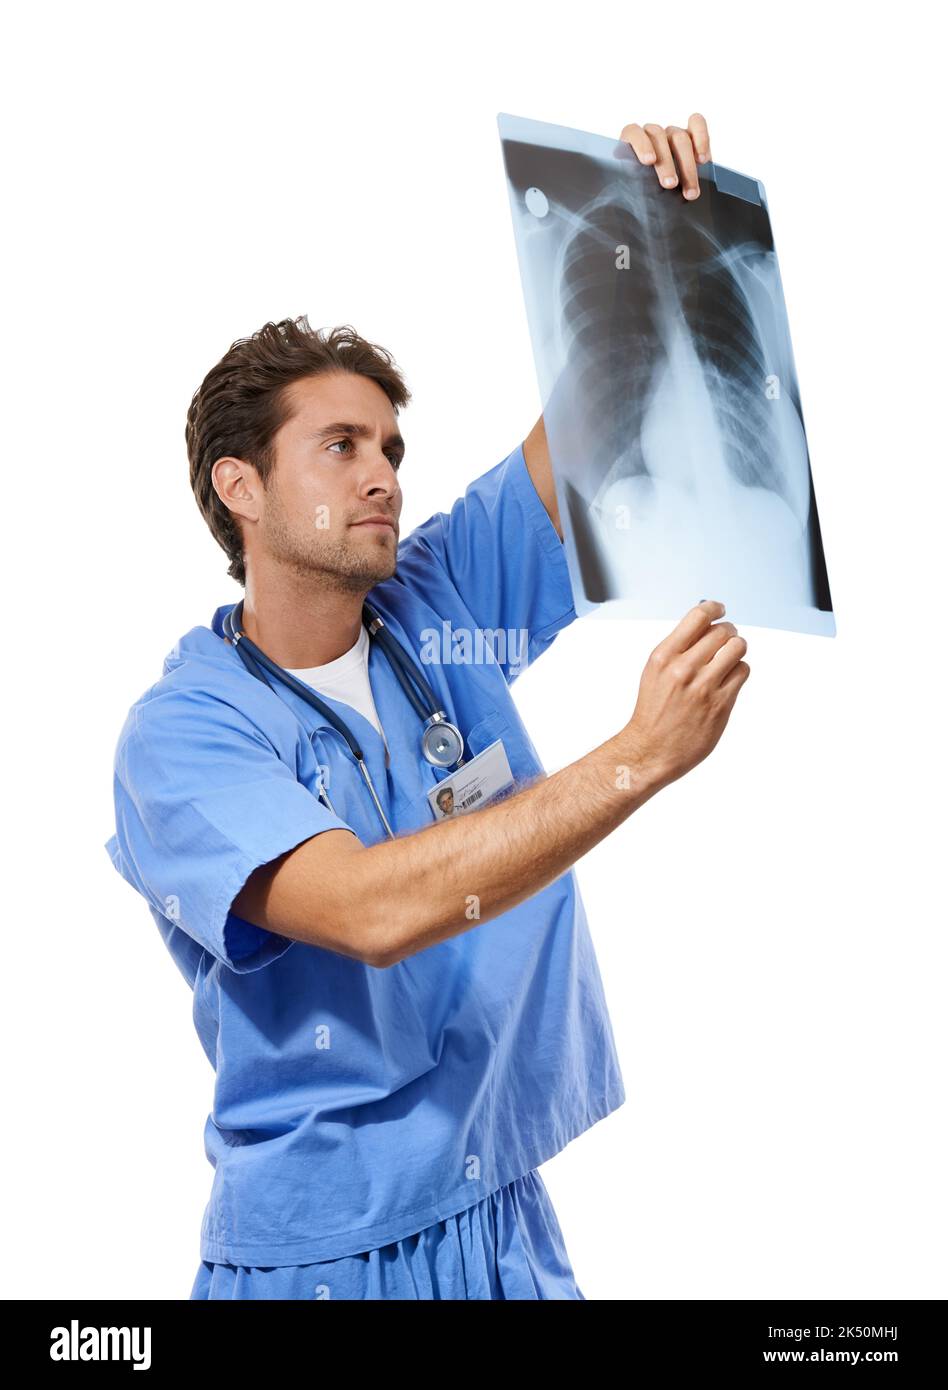 Diagnosi del problema. Studio shot di un giovane medico che esamina una radiografia che sta tenendo in mano. Foto Stock